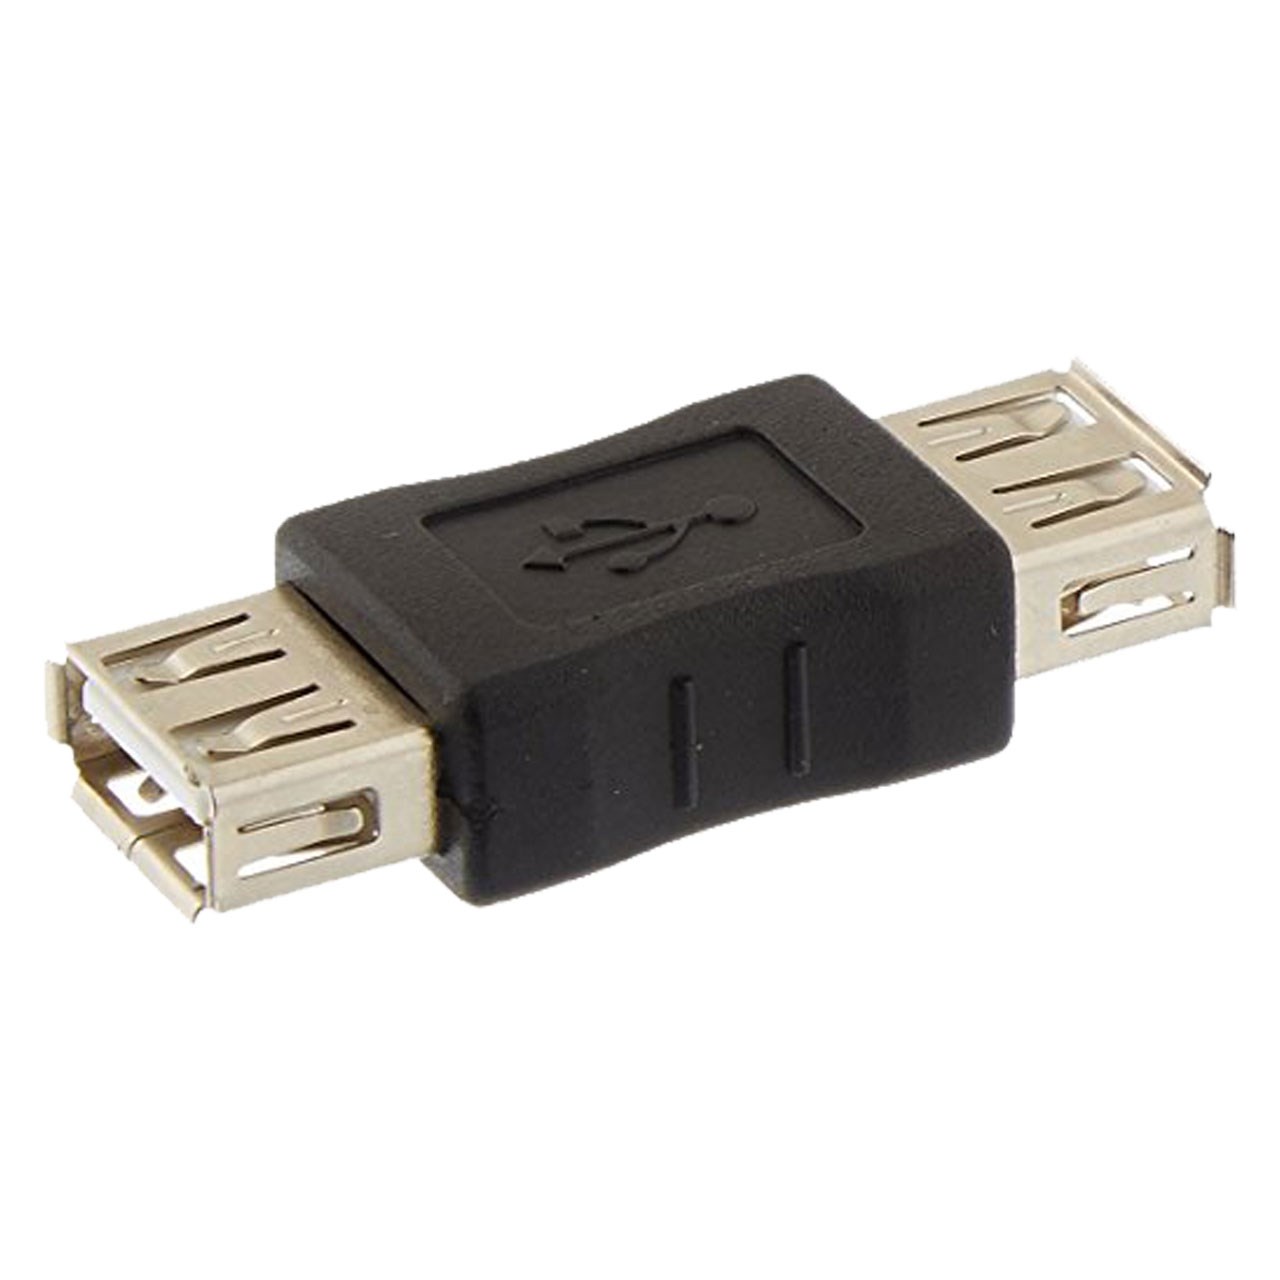 نقد و بررسی مبدل افزایش طول USB مدل Berl 4P مادگی توسط خریداران